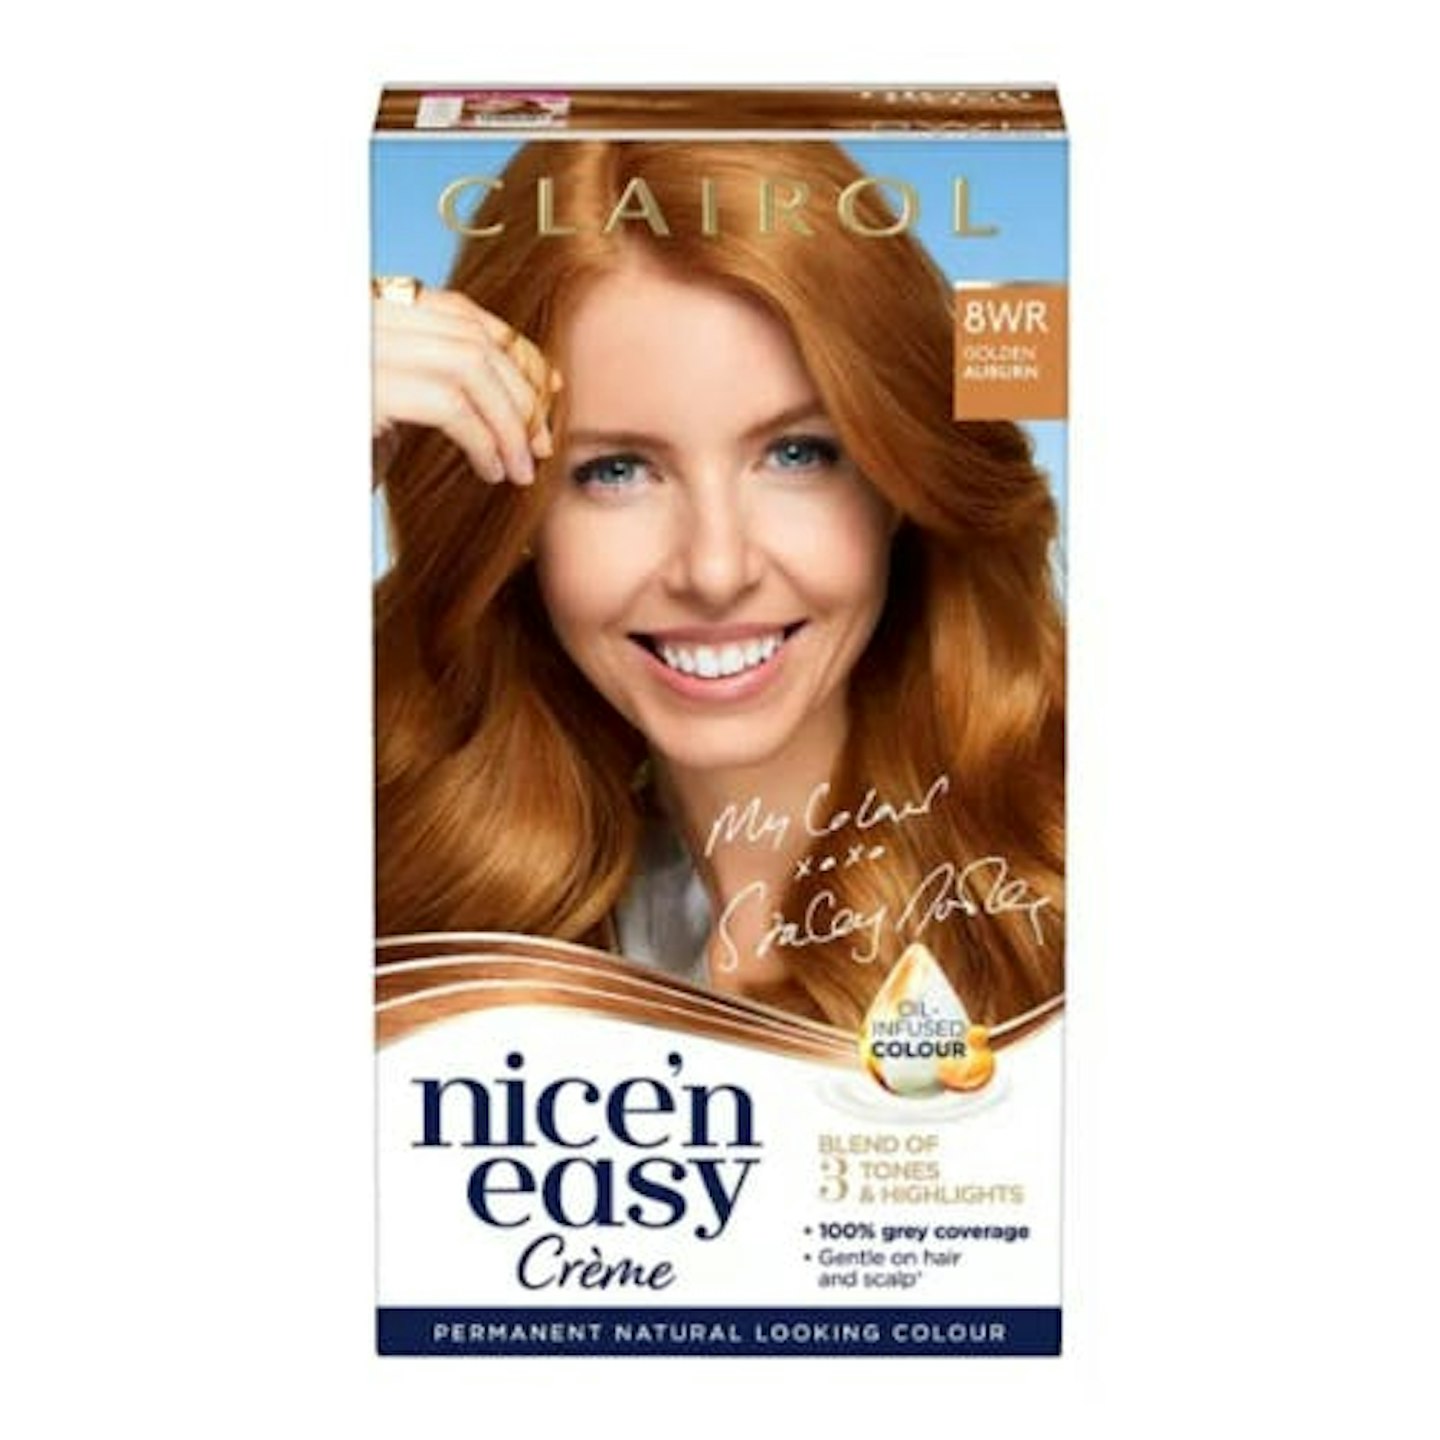 Clairol Nice'n Easy Creme Oil Infused Permanent Hair Dye